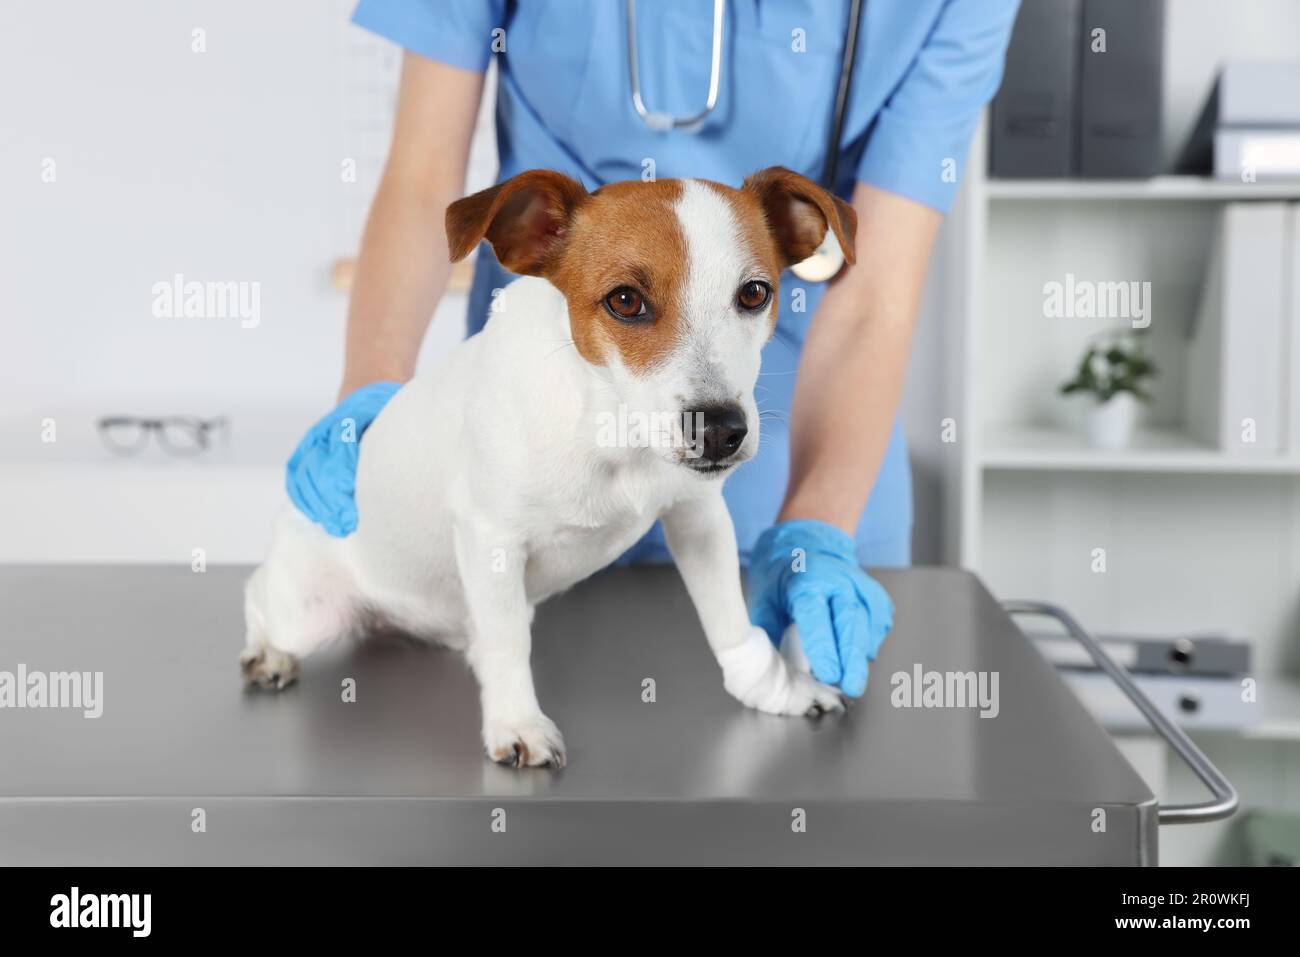 Tierarzt, der Verband an der Hundepfote anlegt, am Tisch in der Klinik,  Nahaufnahme Stockfotografie - Alamy